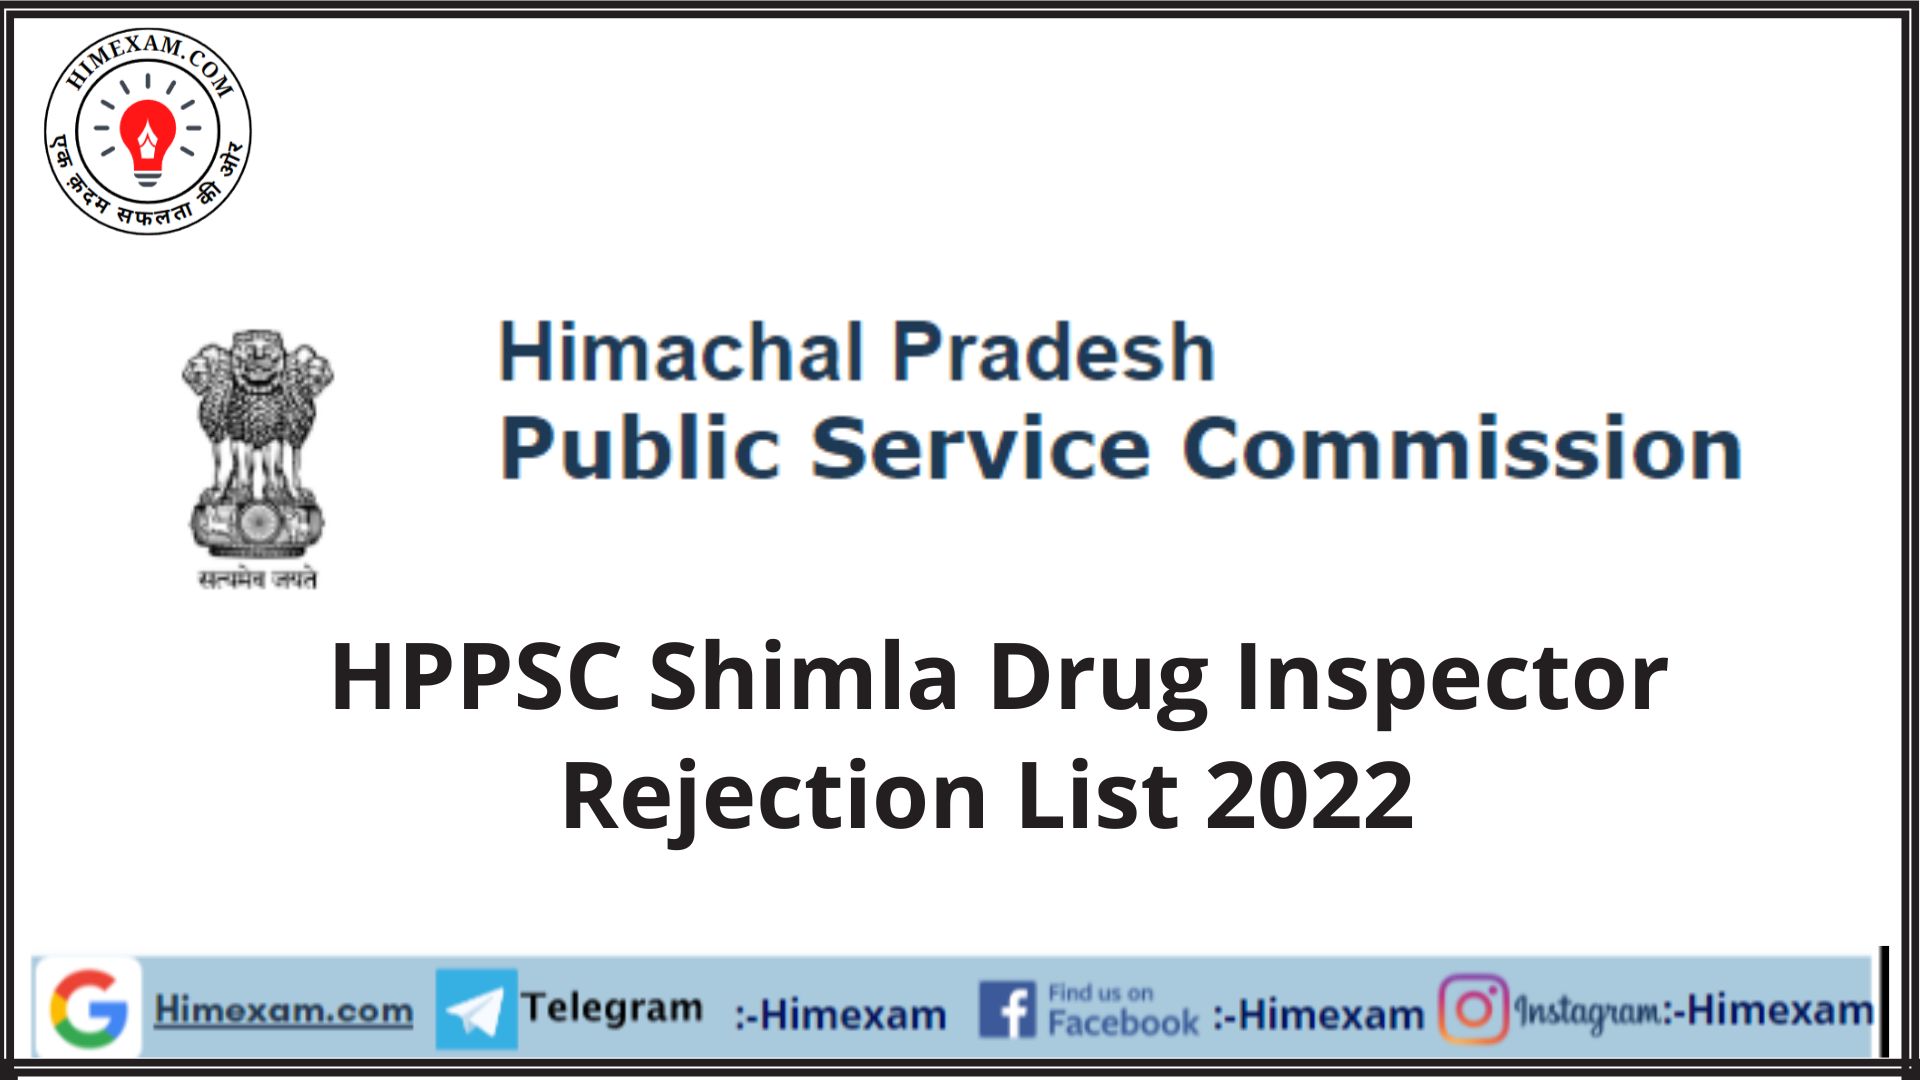 HPPSC Shimla Drug Inspector Rejection List 2022